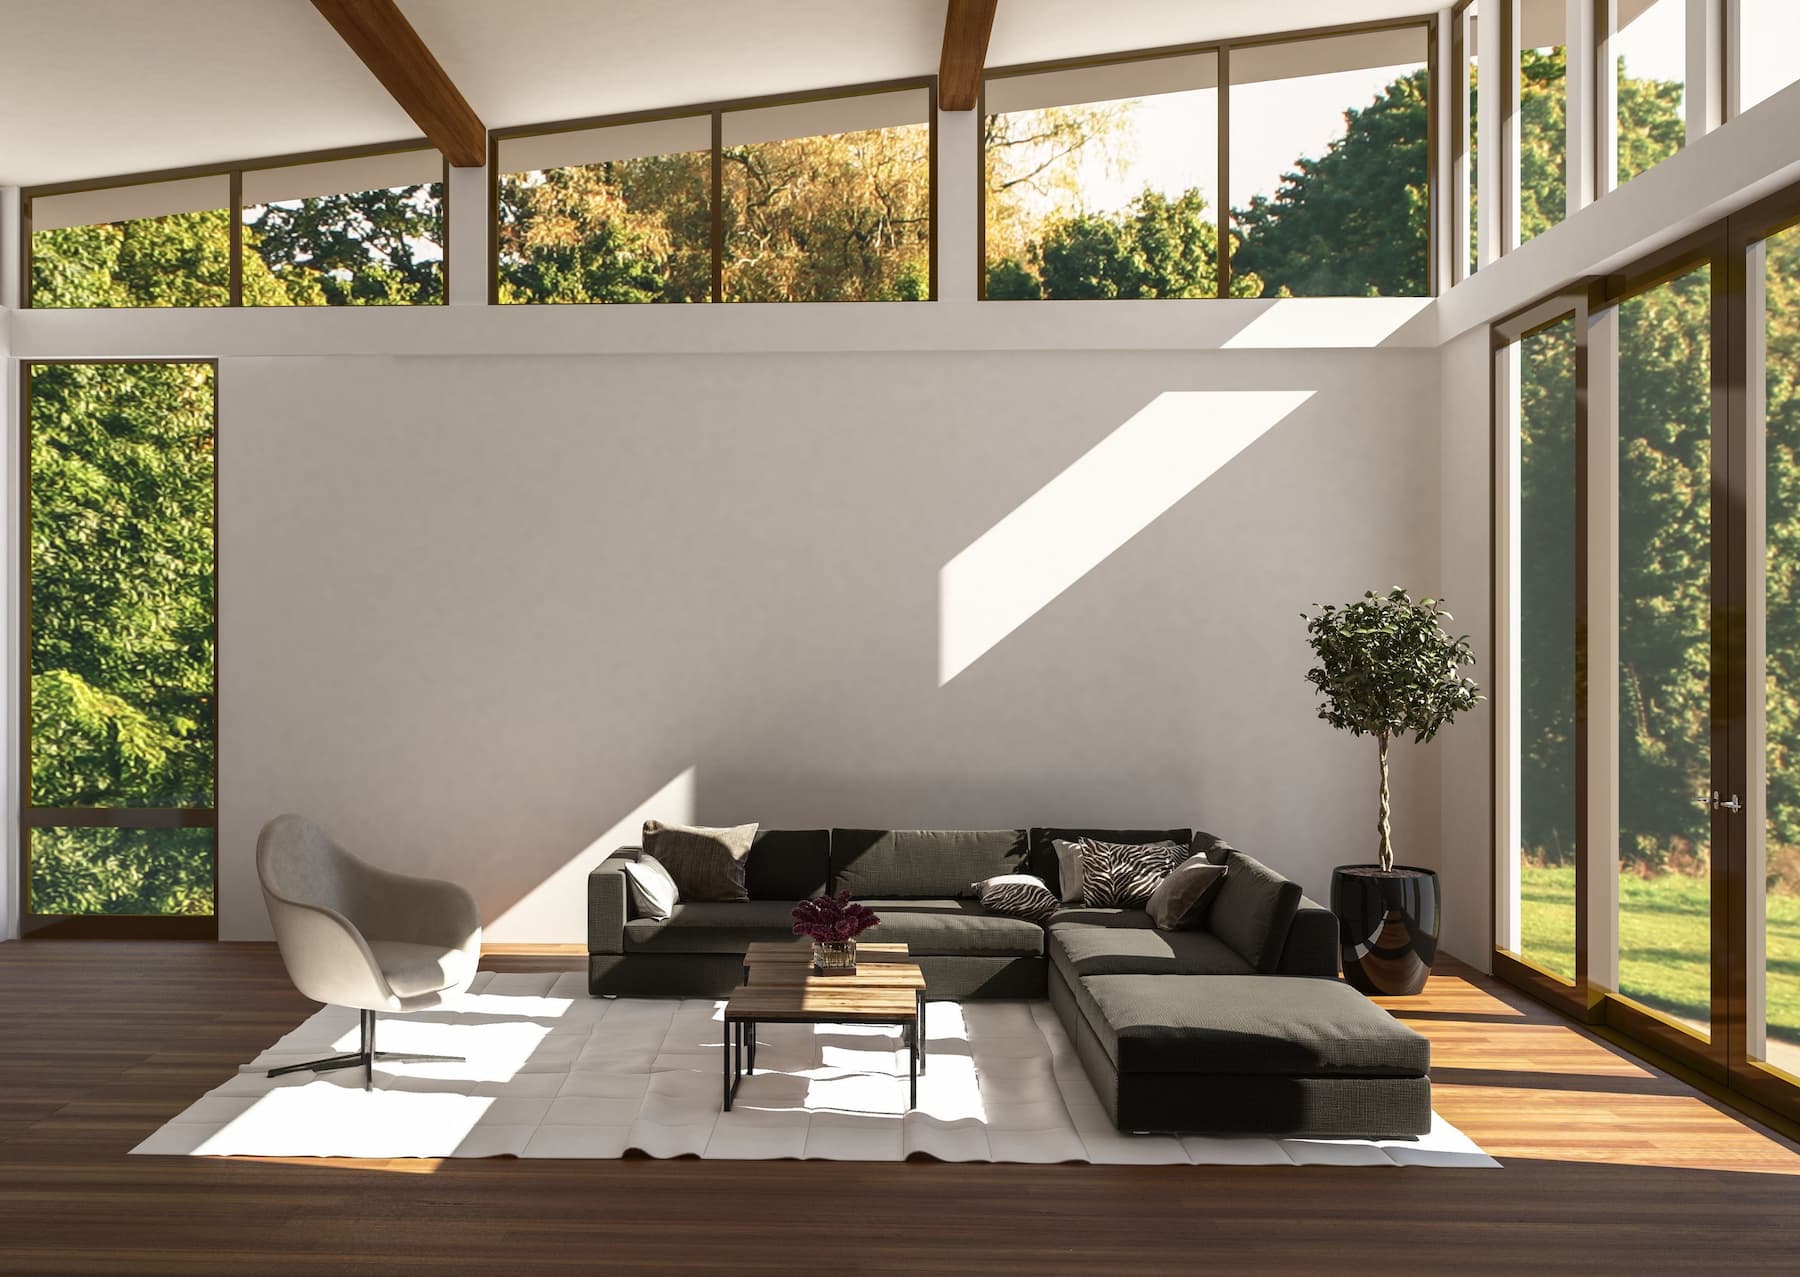 minimalistic interior design showcasing natural lighting